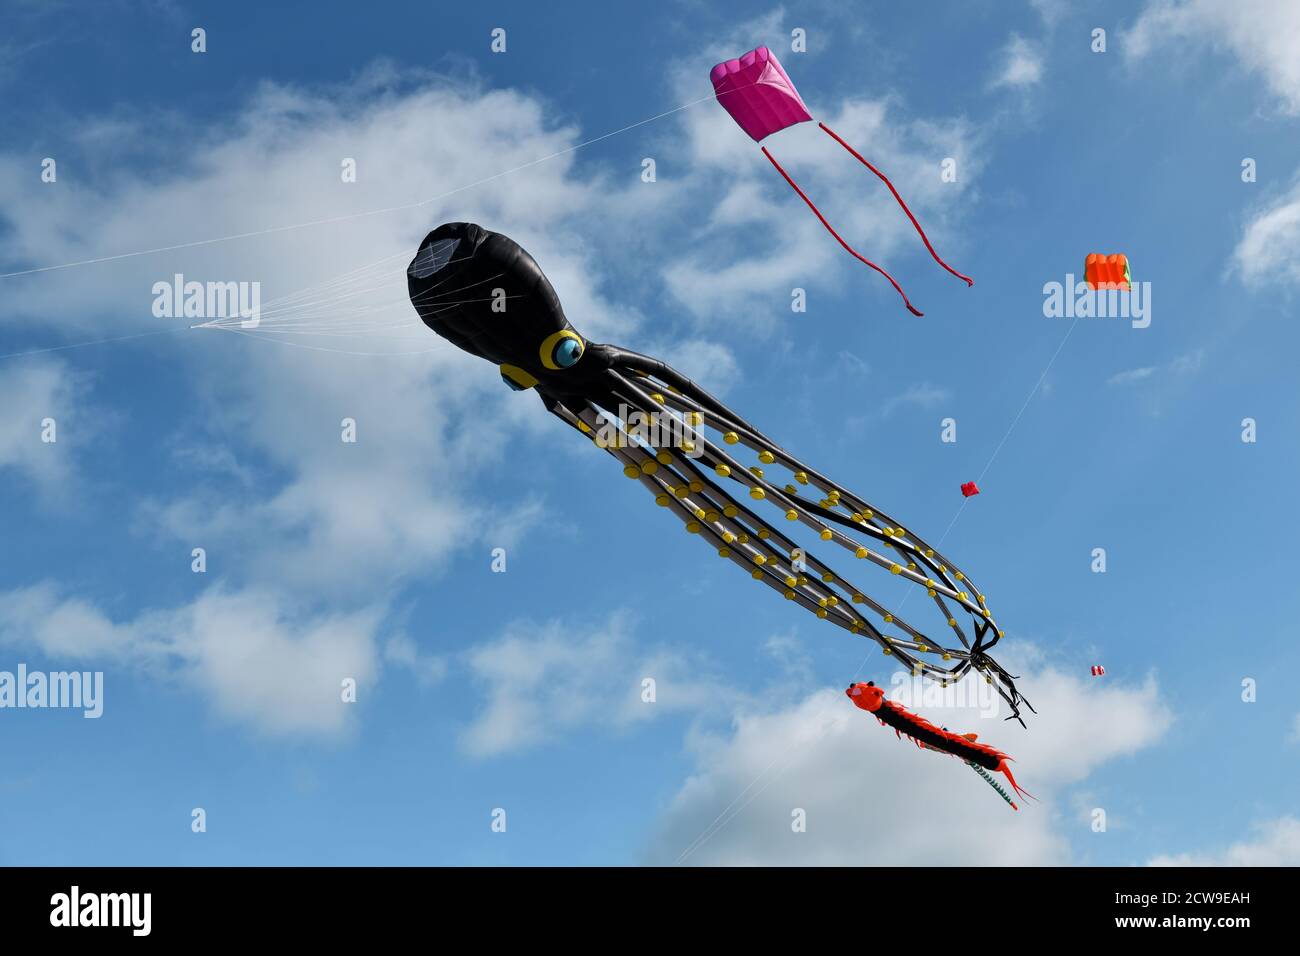 Kite festival. Octopus kites in the sky in Atlantic ocean Stock Photo